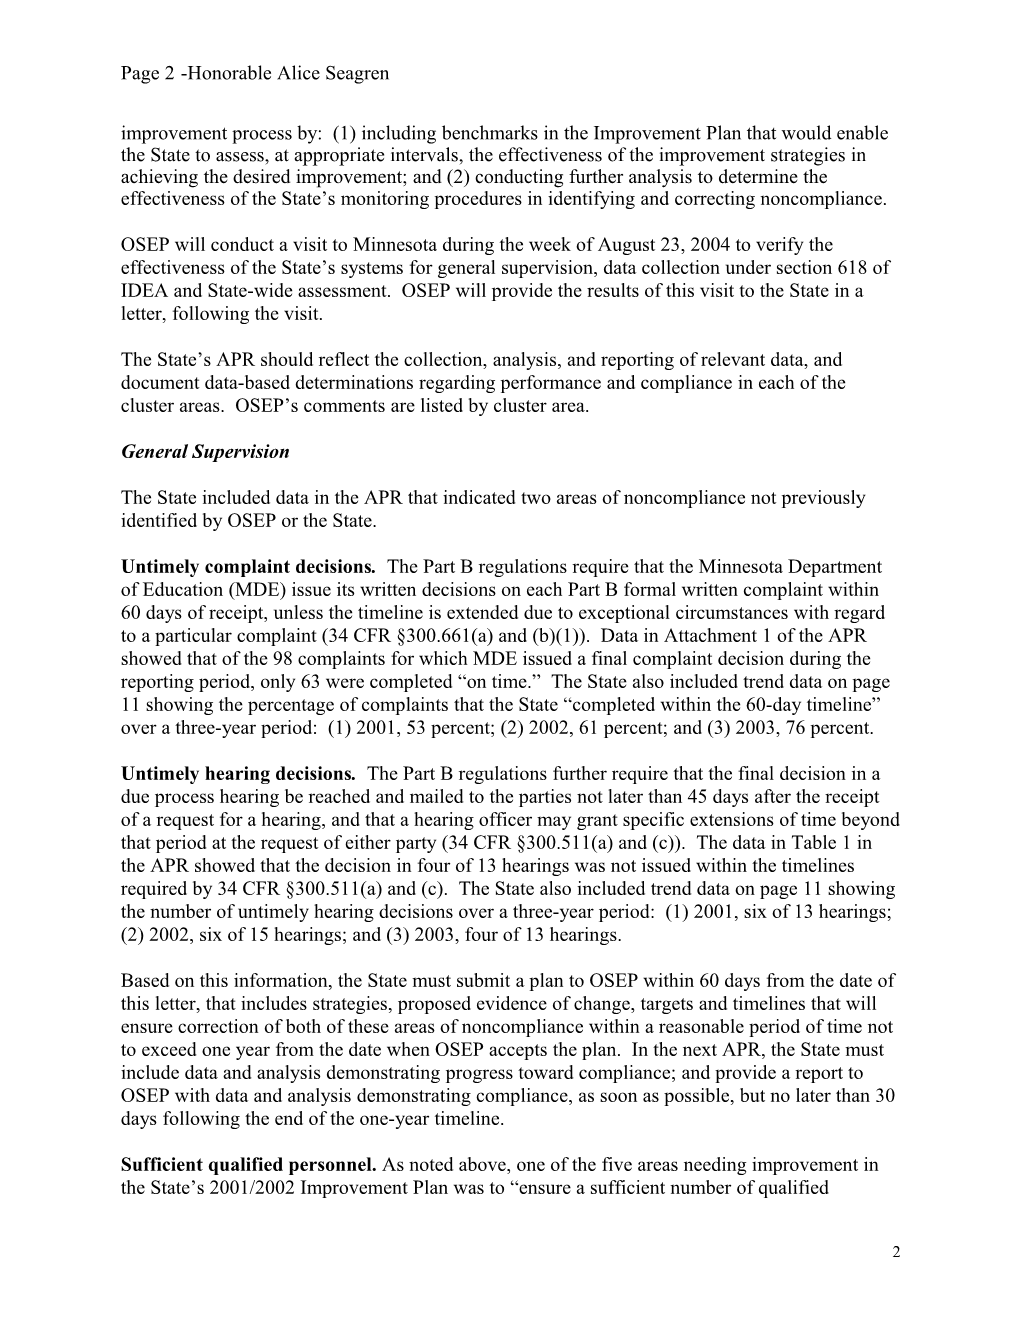 Minnesota Part B APR Letter, 2002-2003 (MS Word)